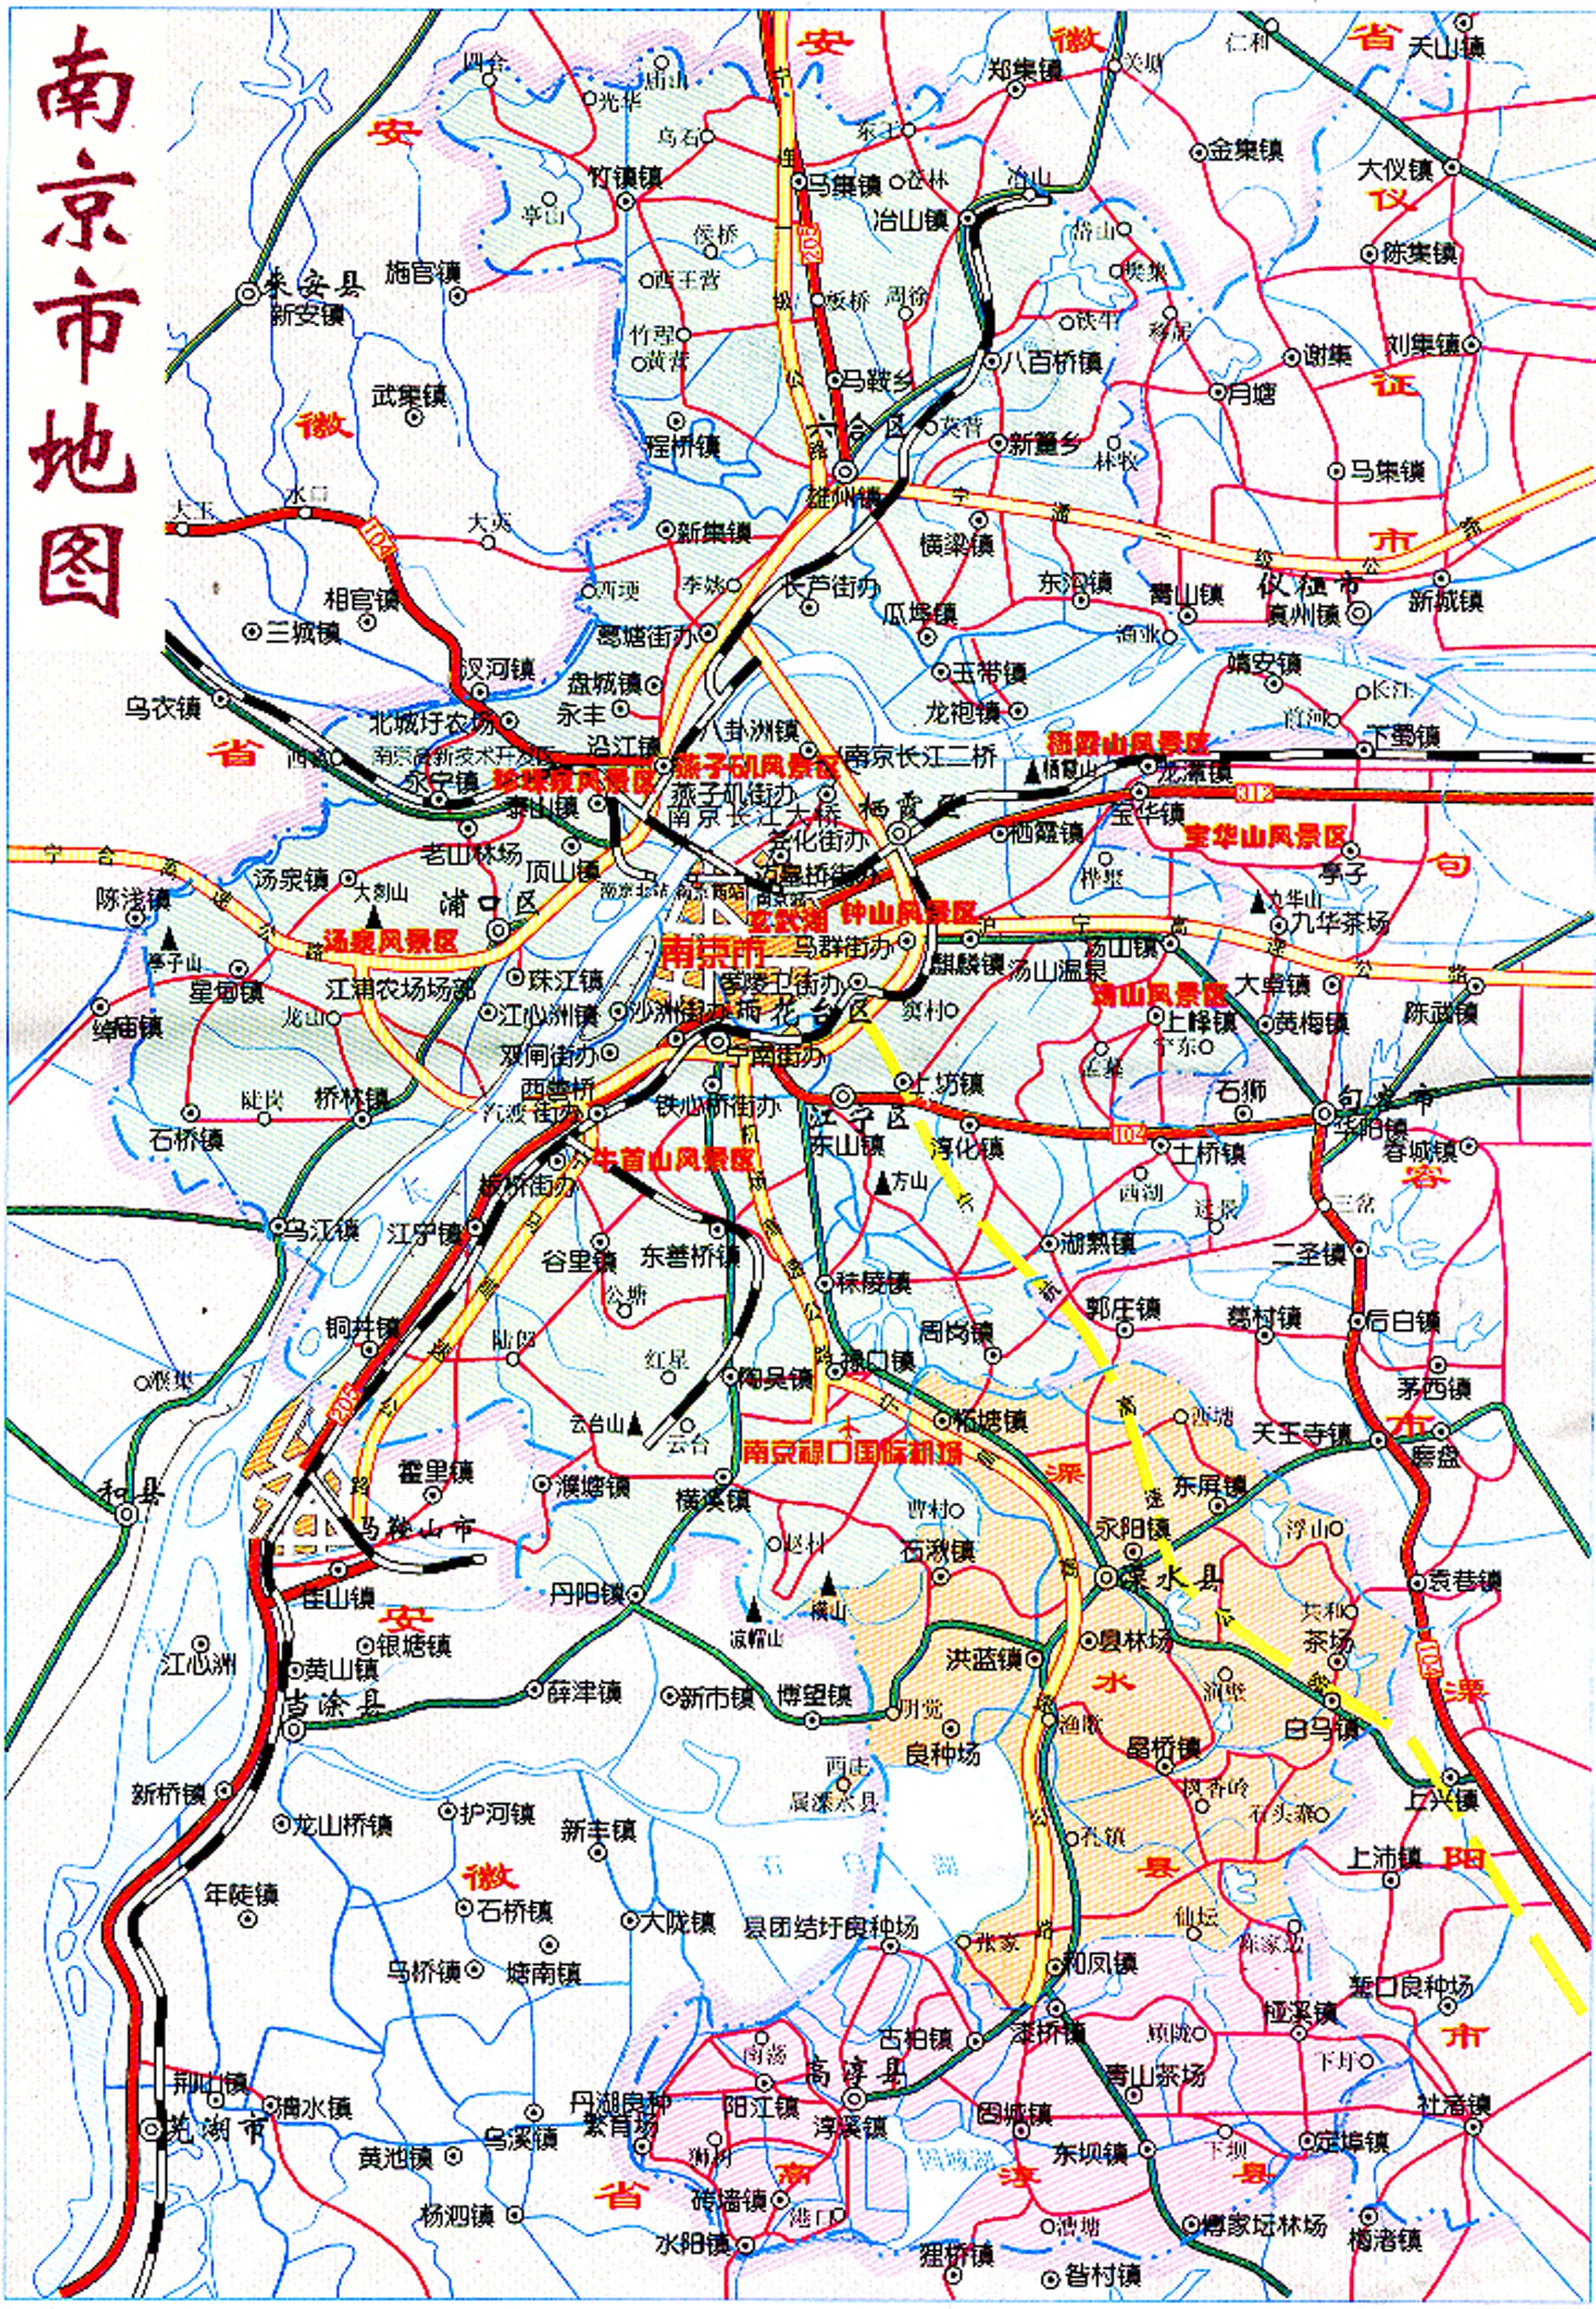 南京市地图,南京市区地图高清版大图,清晰精准的南京市地图